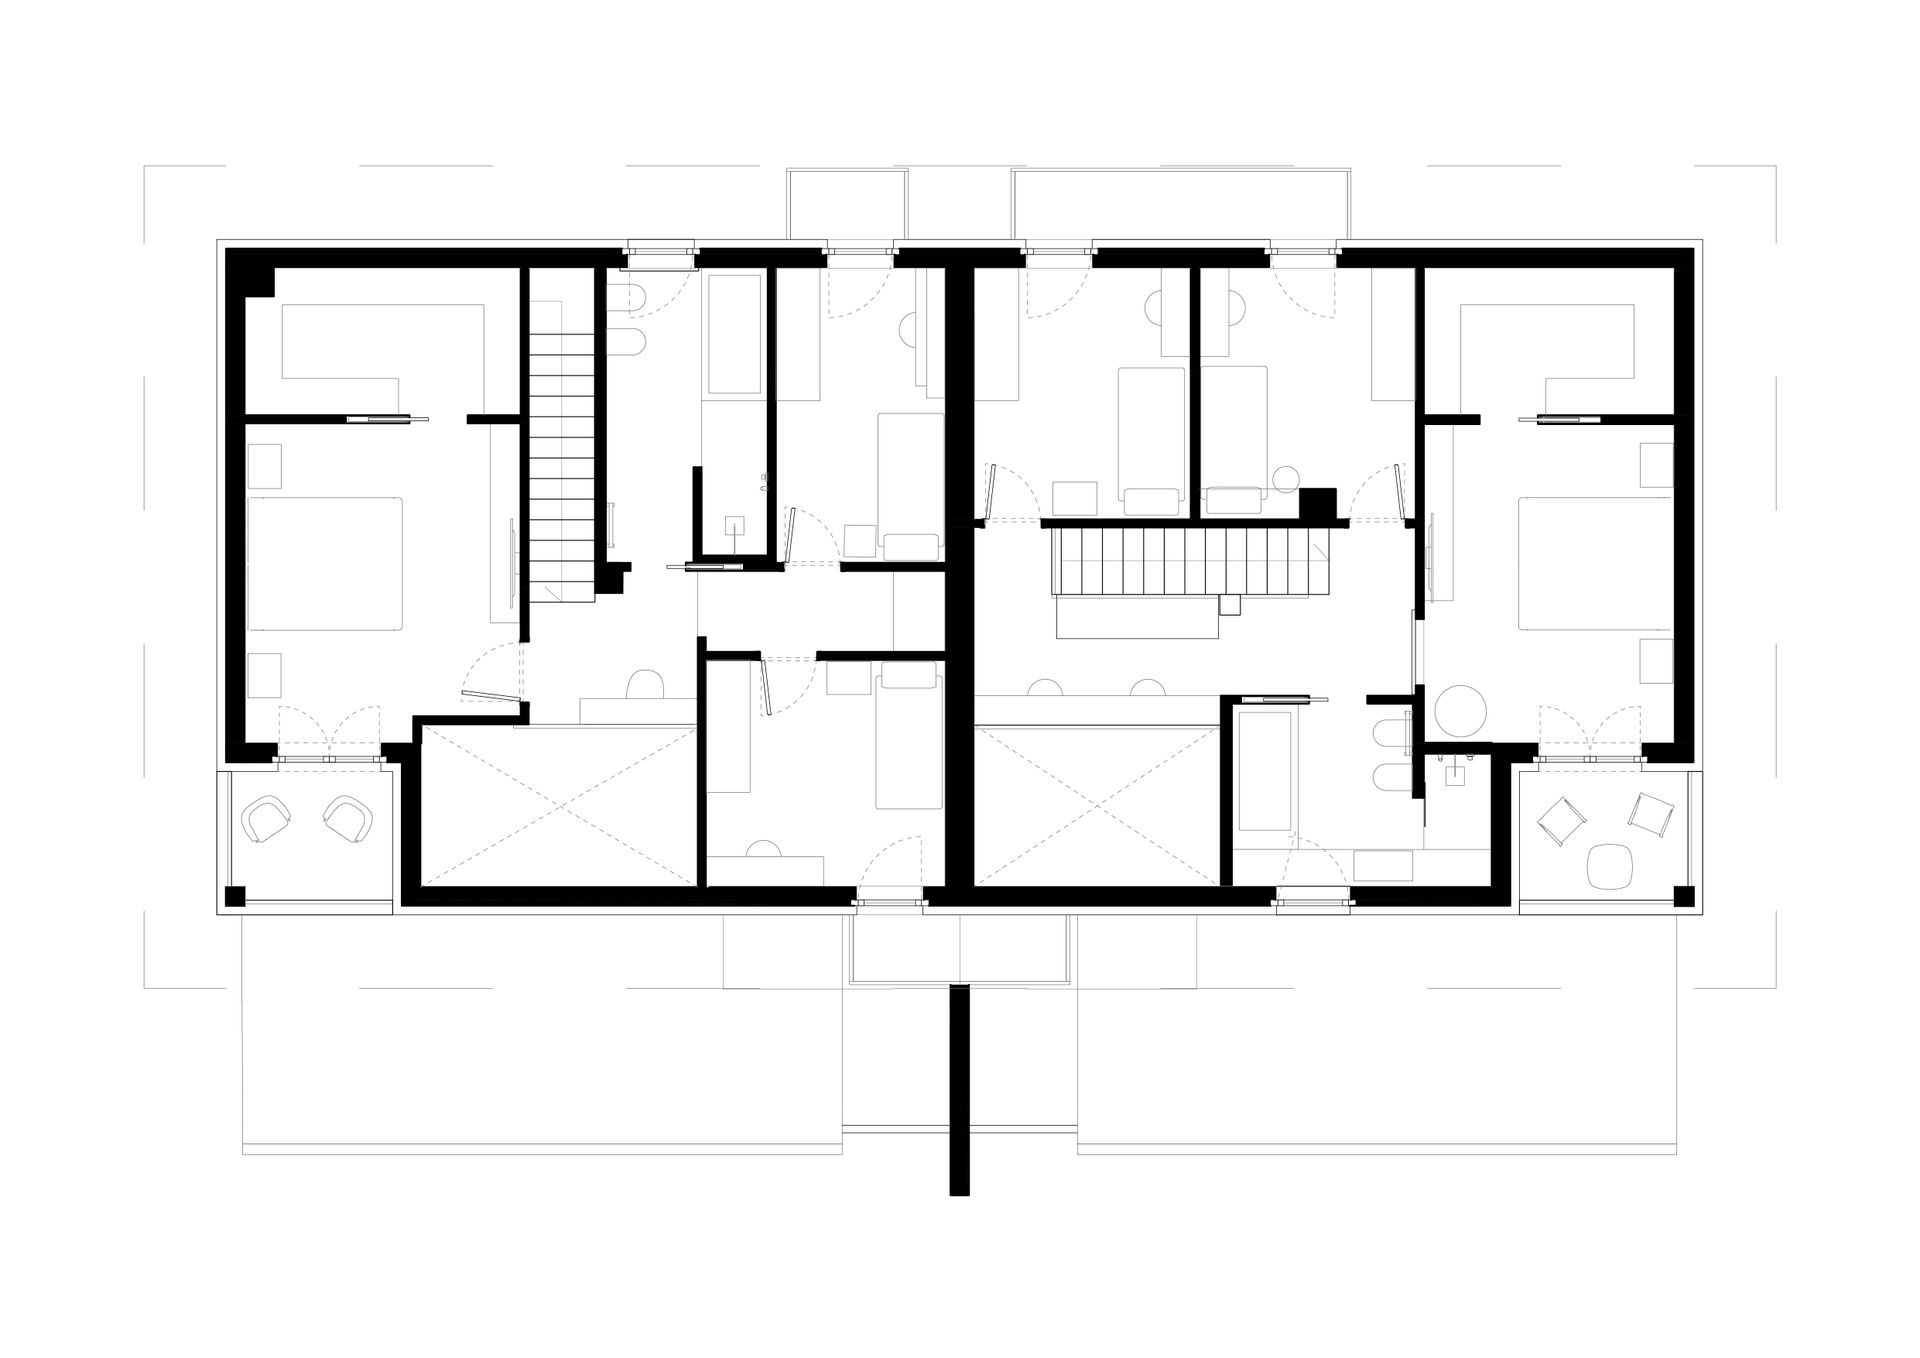 Progetto realizzazione nuova villa bifamiliare linearità esterni in contrasto con diversità singole abitazioni. Officina Magisafi architettura design - abitazione b - pianta soppalco